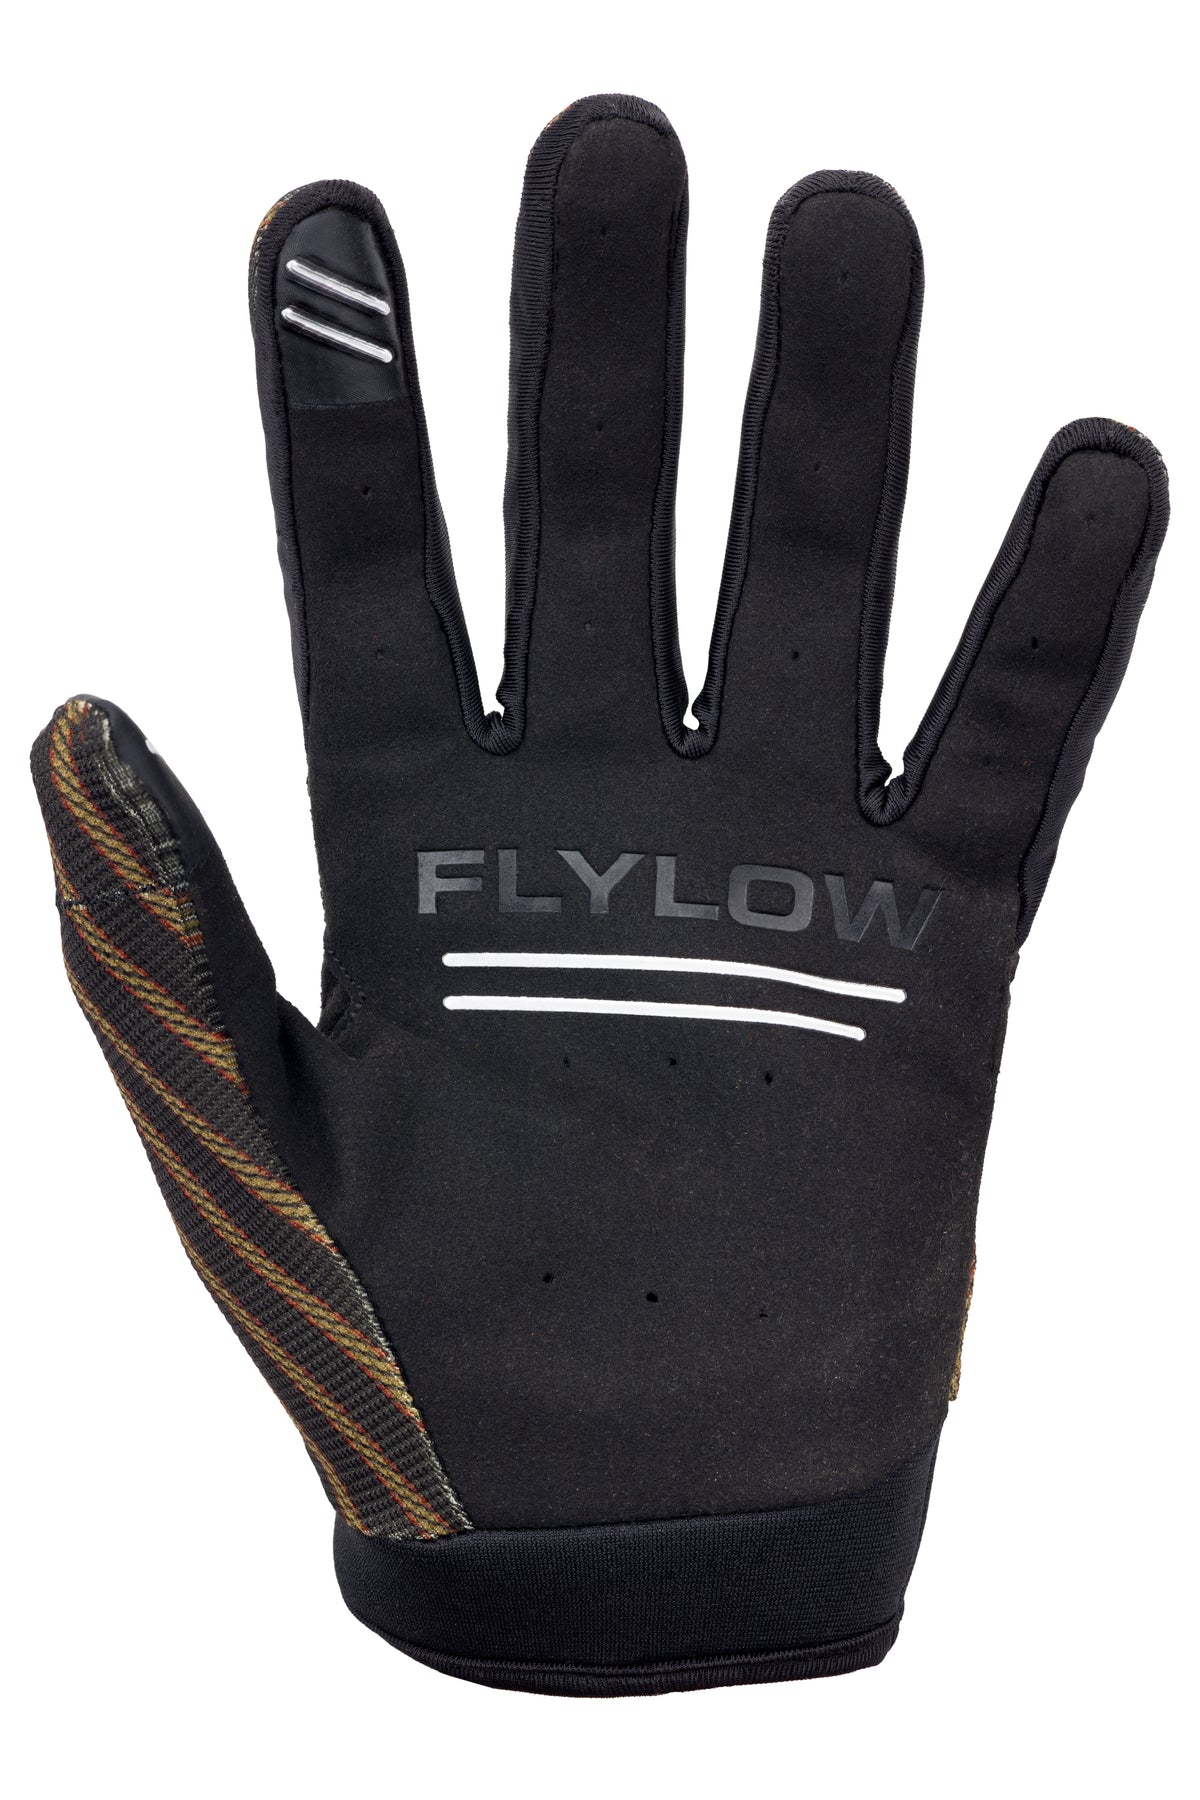 Dirt Glove – Flylow Gear